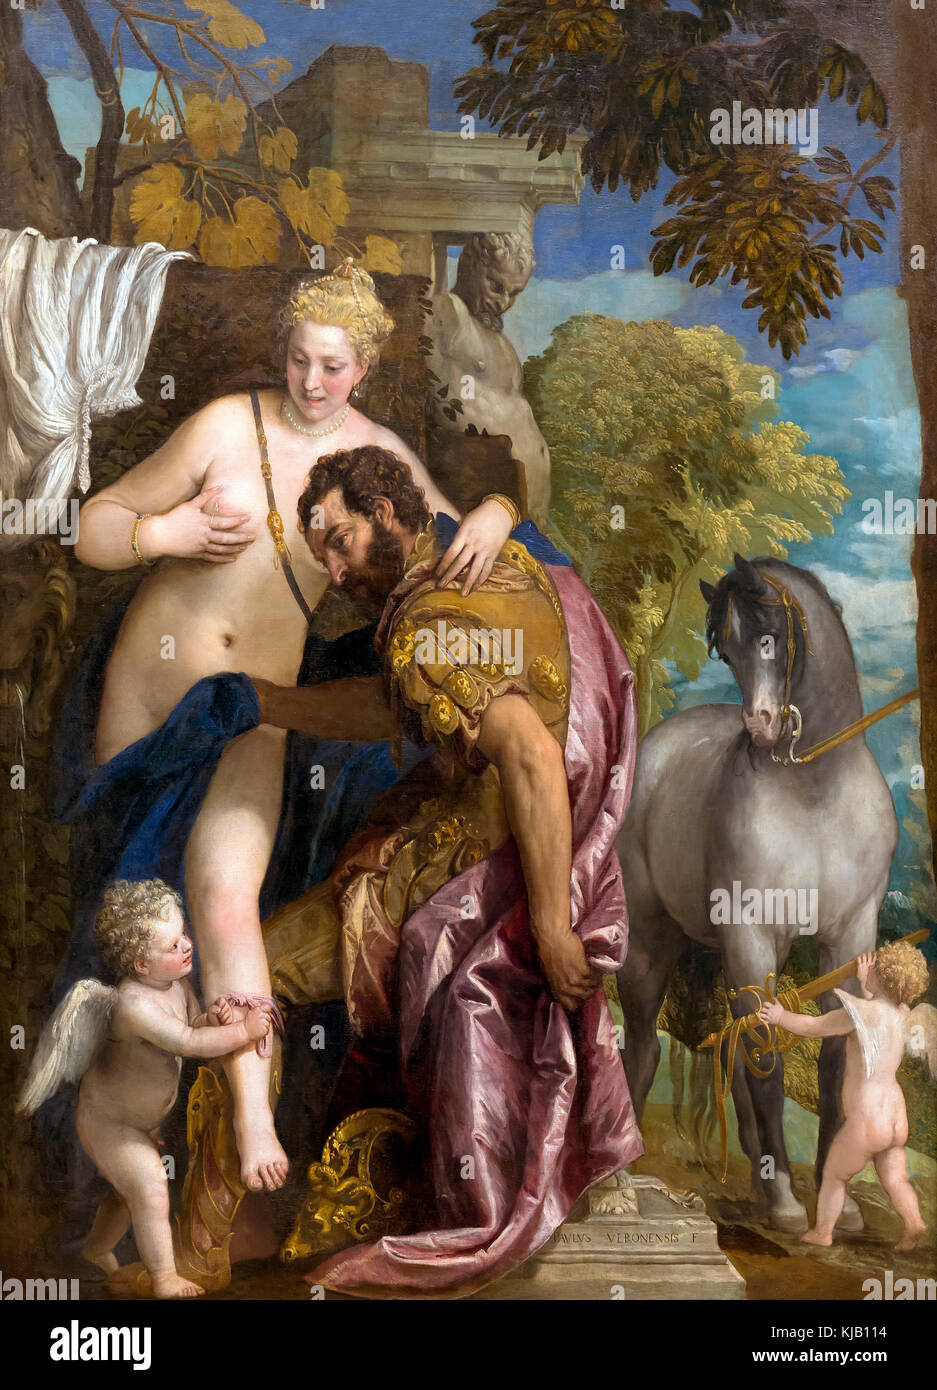 Mars et Vénus Unis par Amour, Paolo Veronese, 1570, Metropolitan Museum of Art, Manhattan, New York City, Etats-Unis, Amérique du Nord Banque D'Images